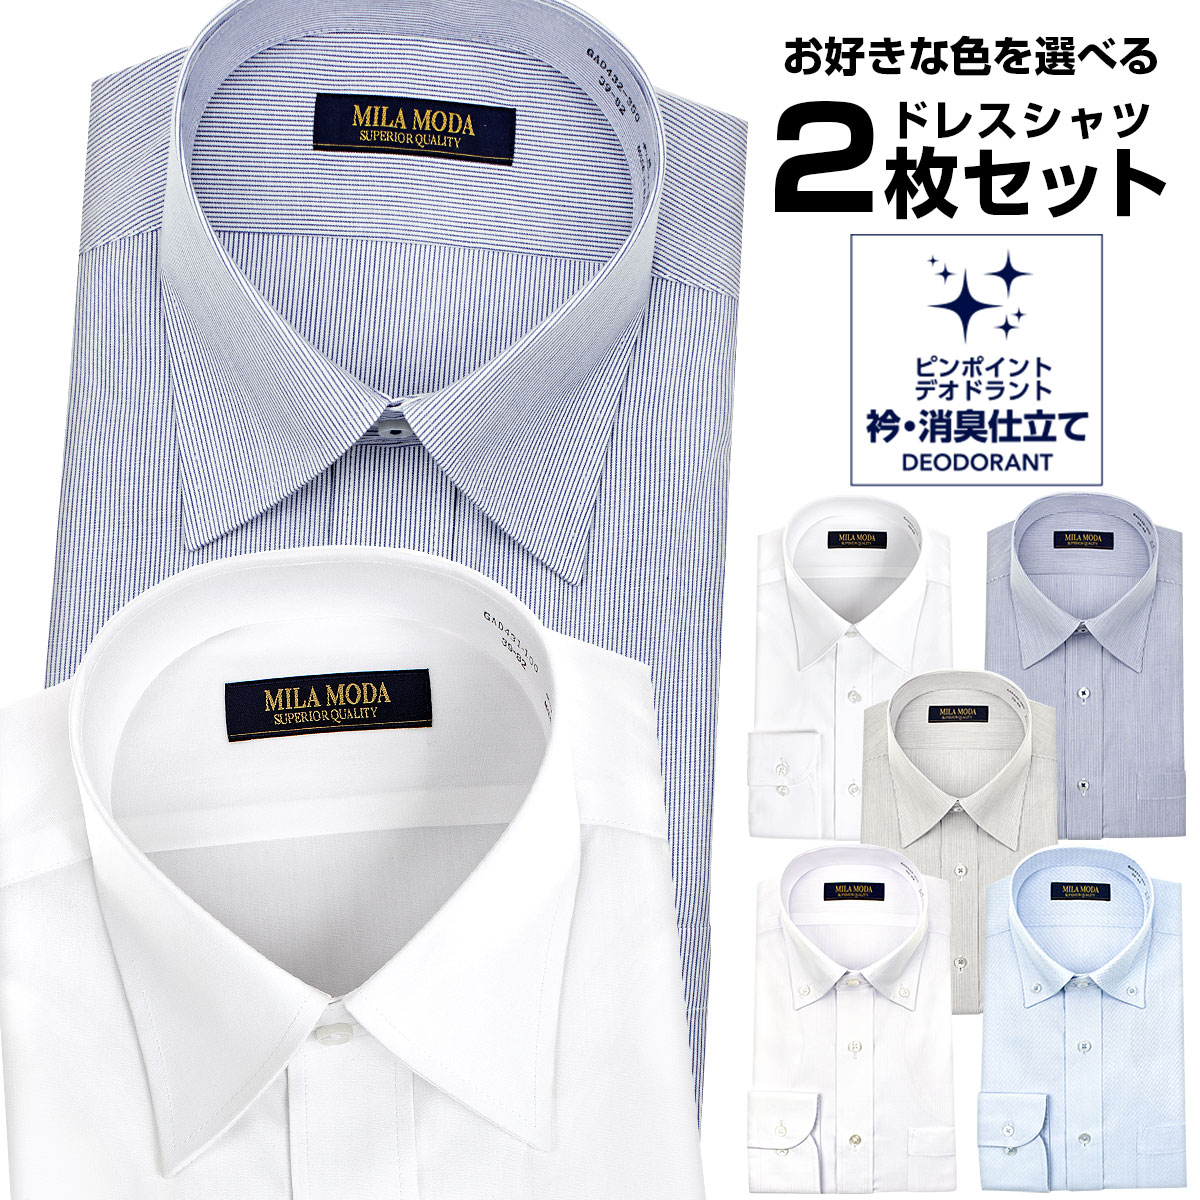 メンズワイシャツ 2枚セット 標準体 MILA MODA 消臭 Yシャツ ドレスシャツ 送料無料